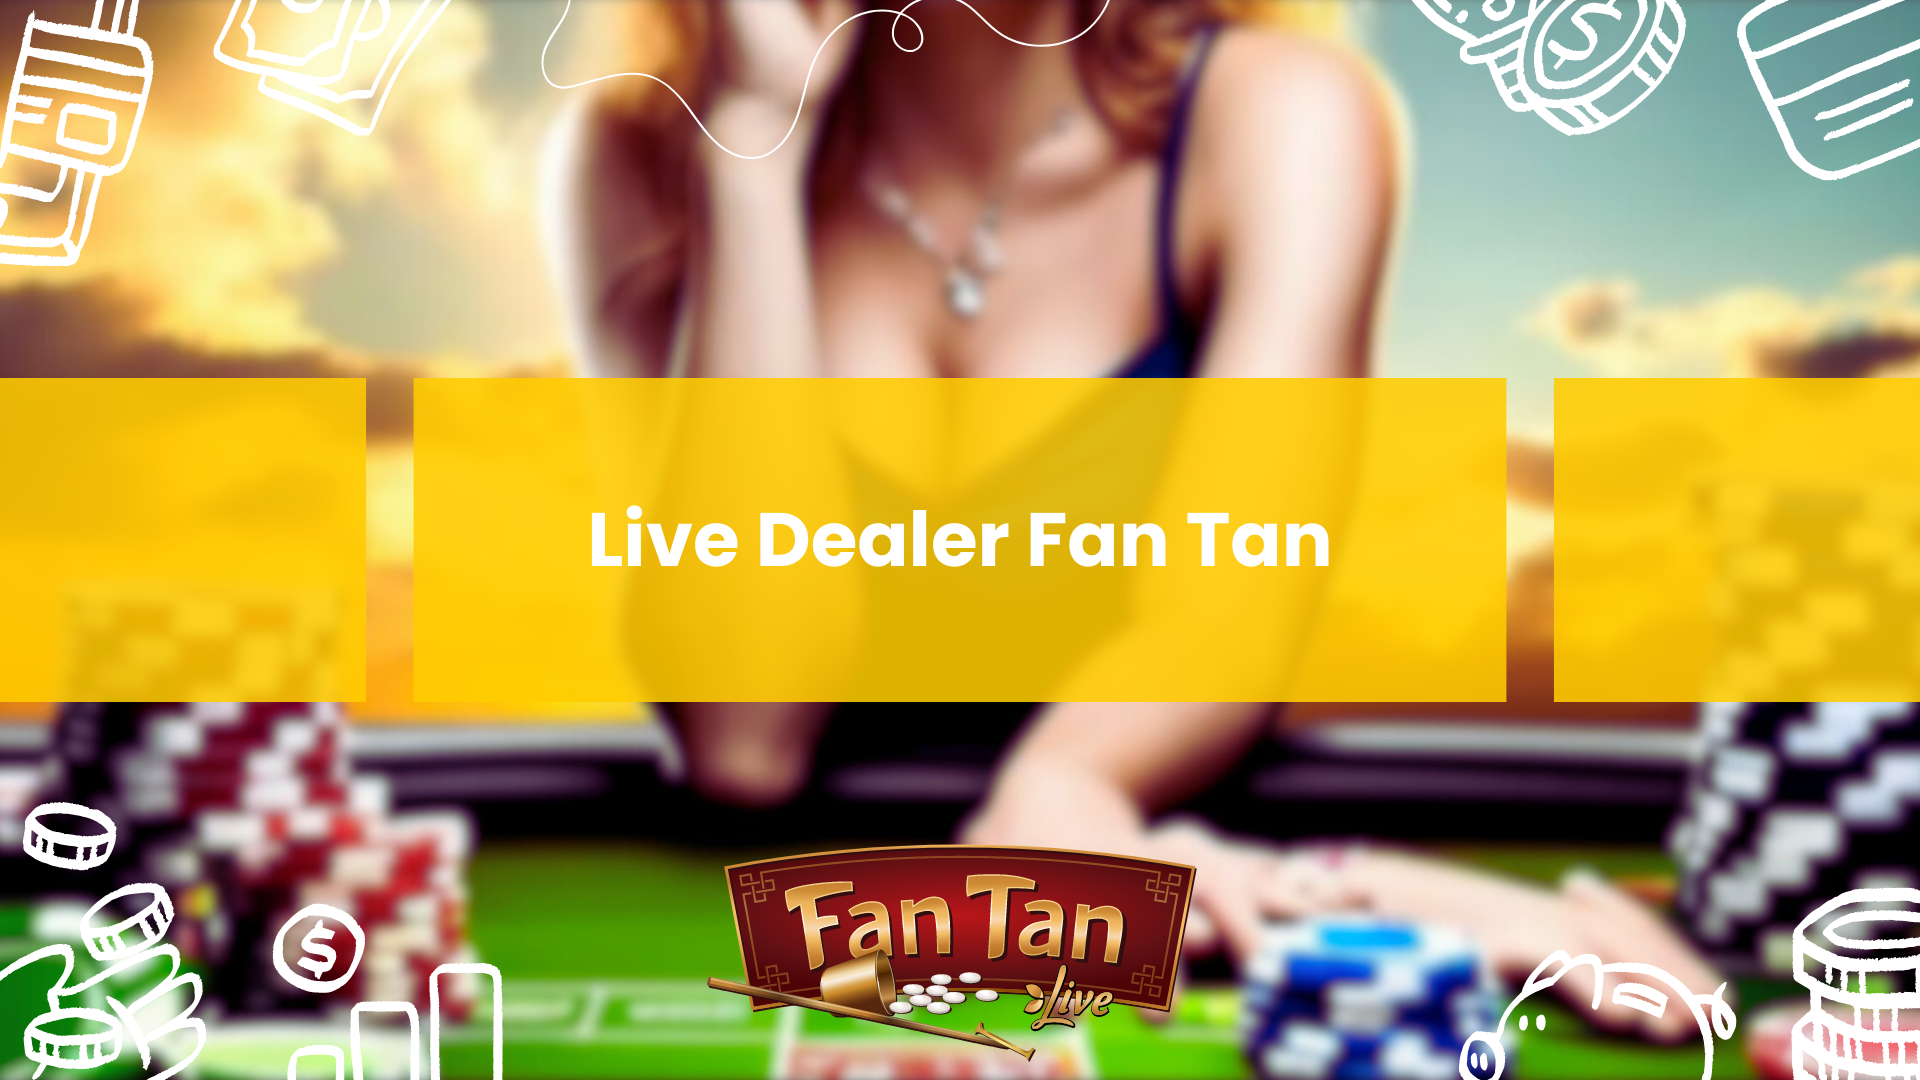 Live Dealer Fan Tan